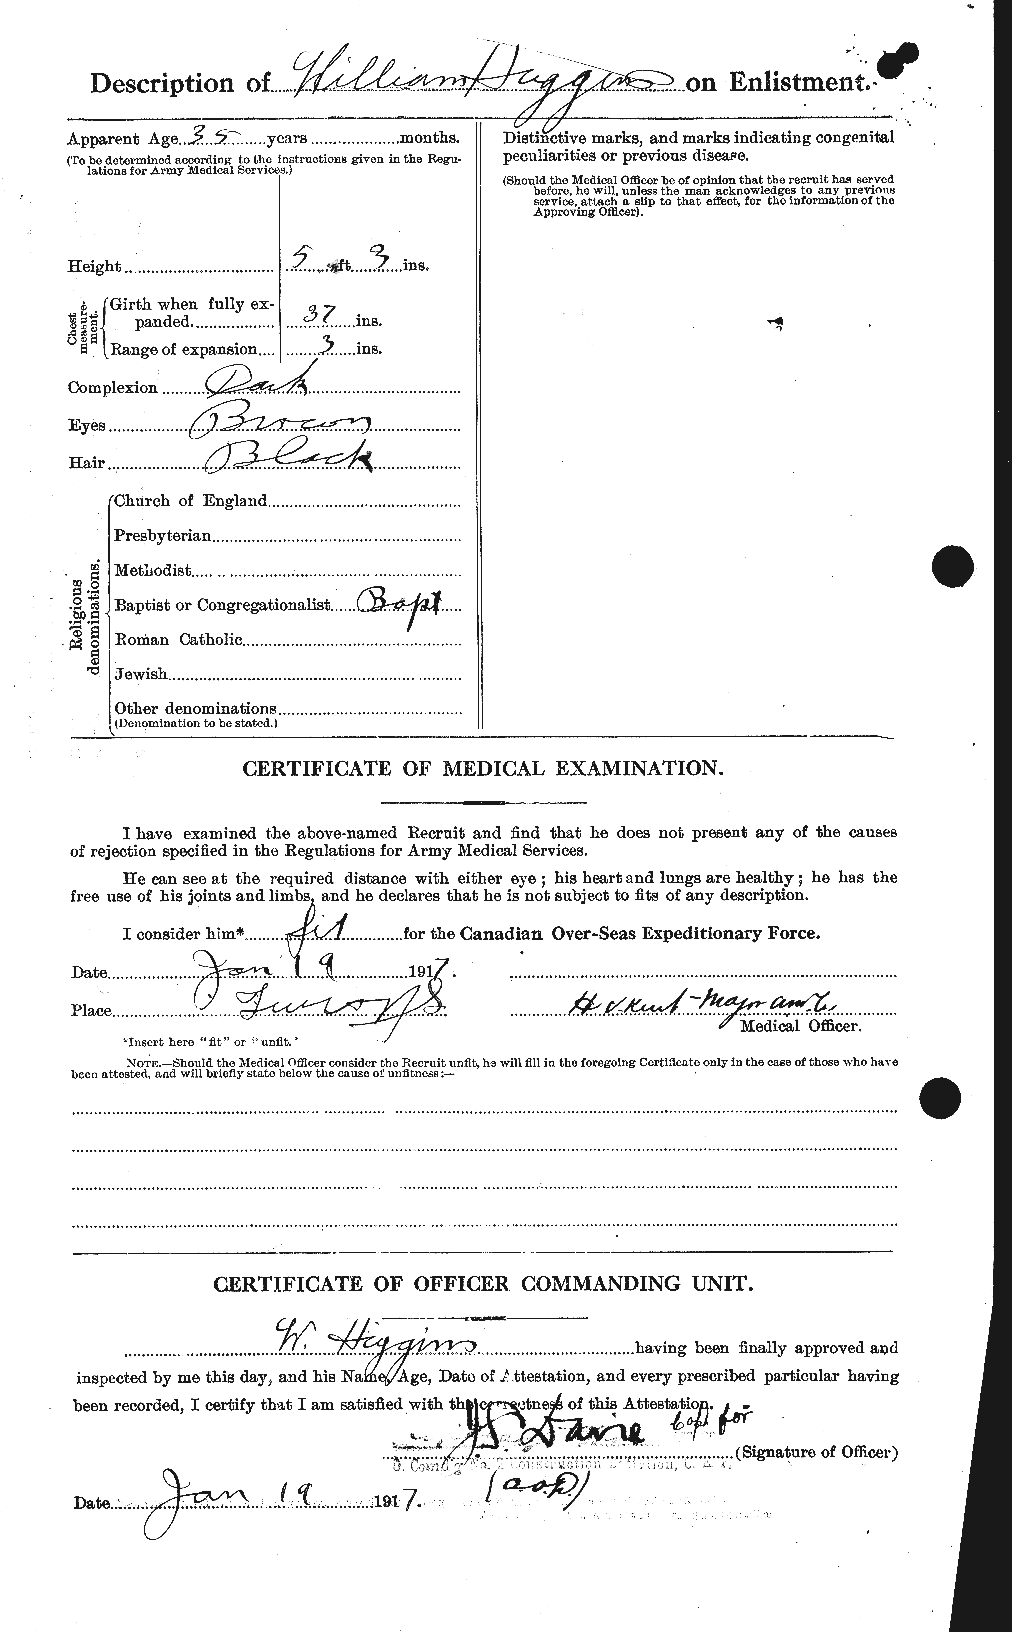 Dossiers du Personnel de la Première Guerre mondiale - CEC 393751b